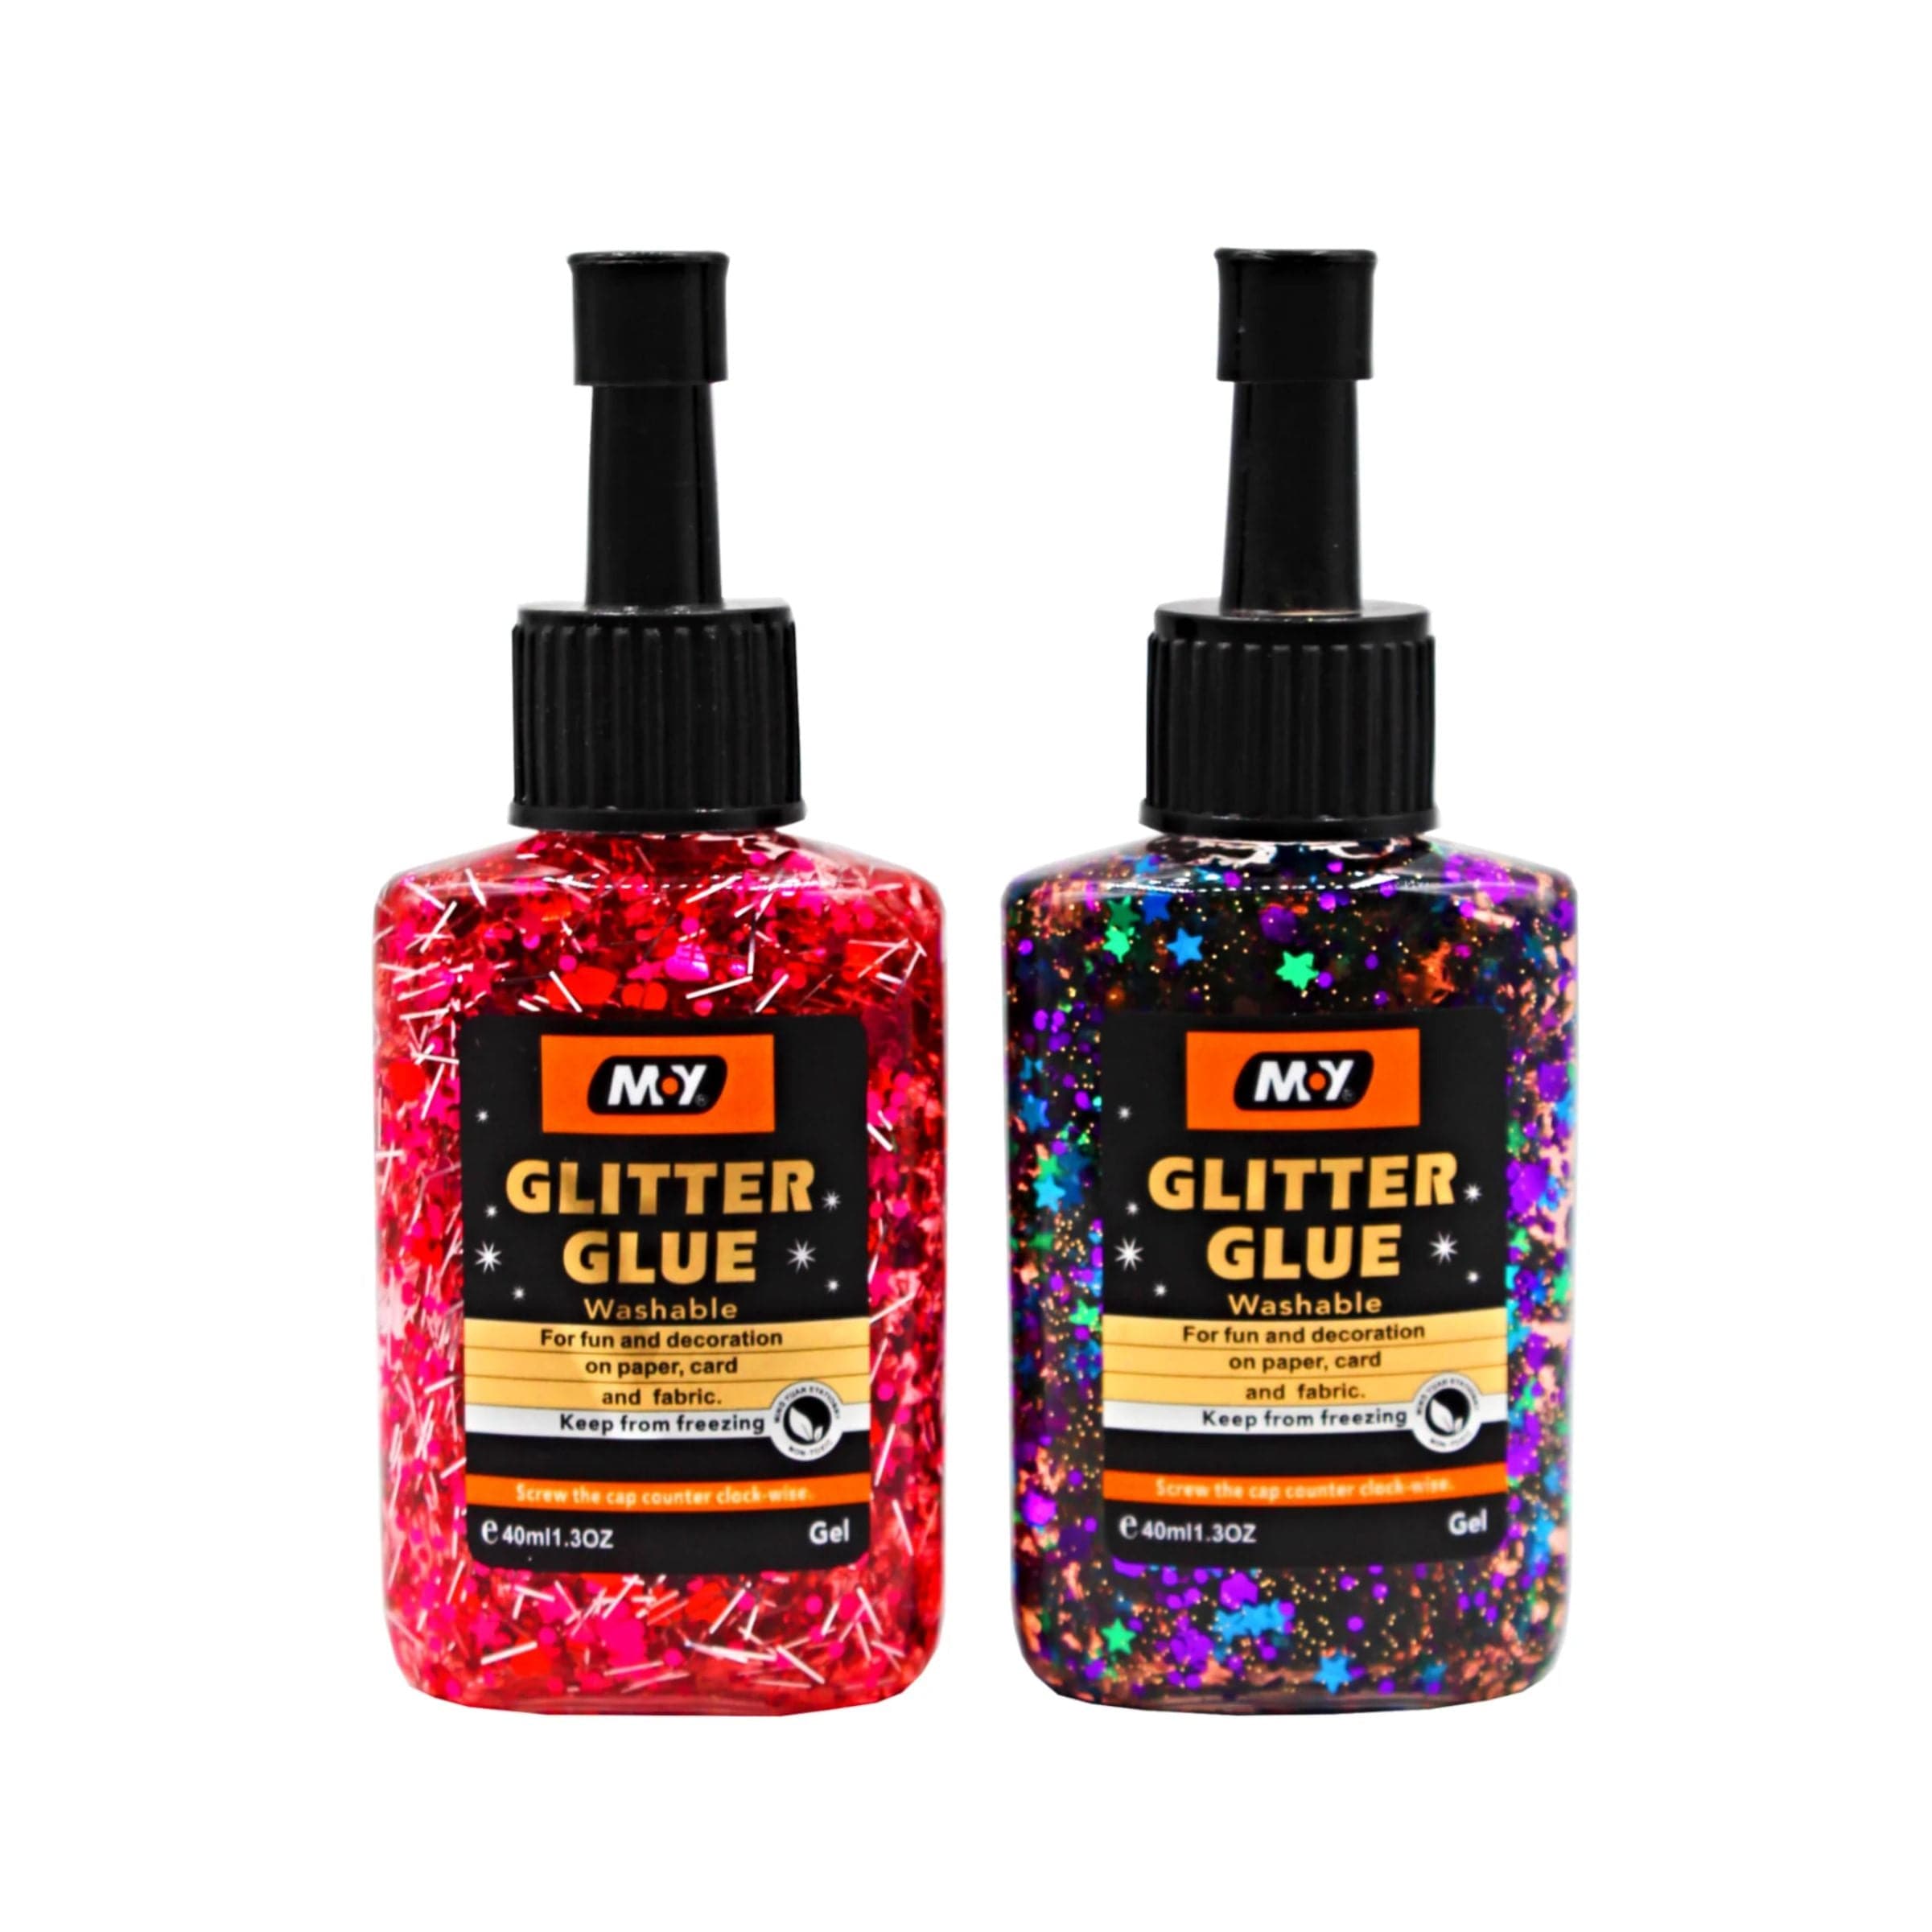 Moy Glitter Glue 40ml Pack of 2